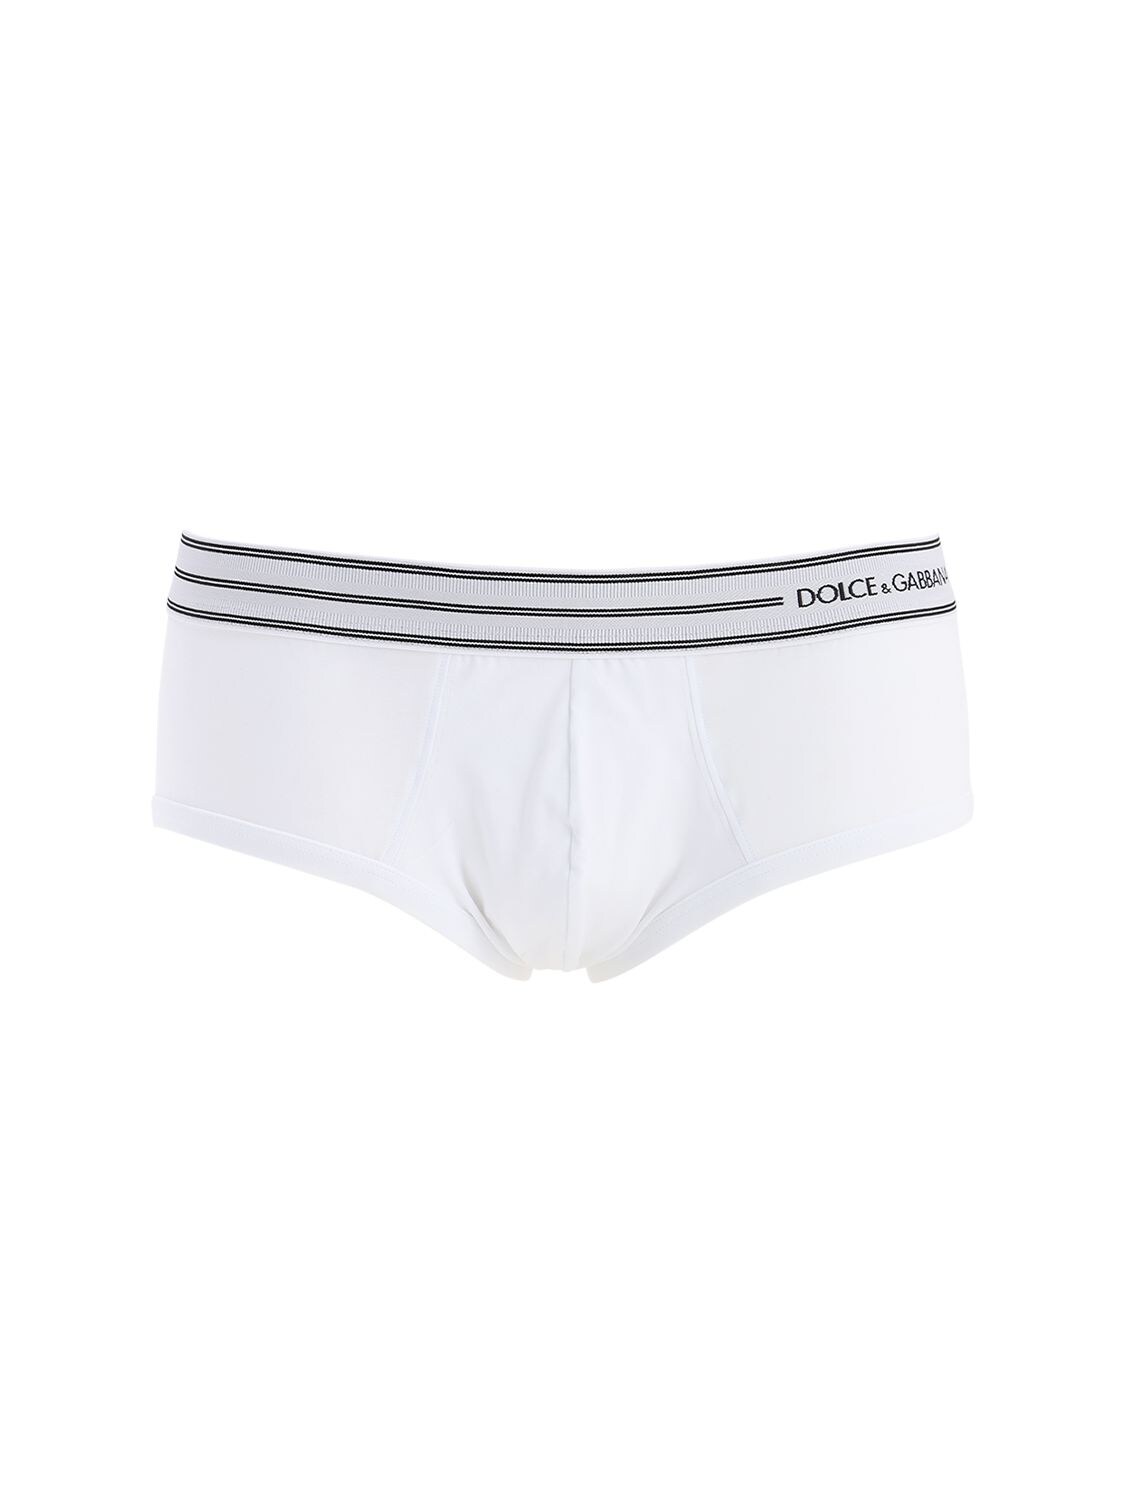 Dolce & Gabbana "brandon Dg King"弹力平均内裤 In White